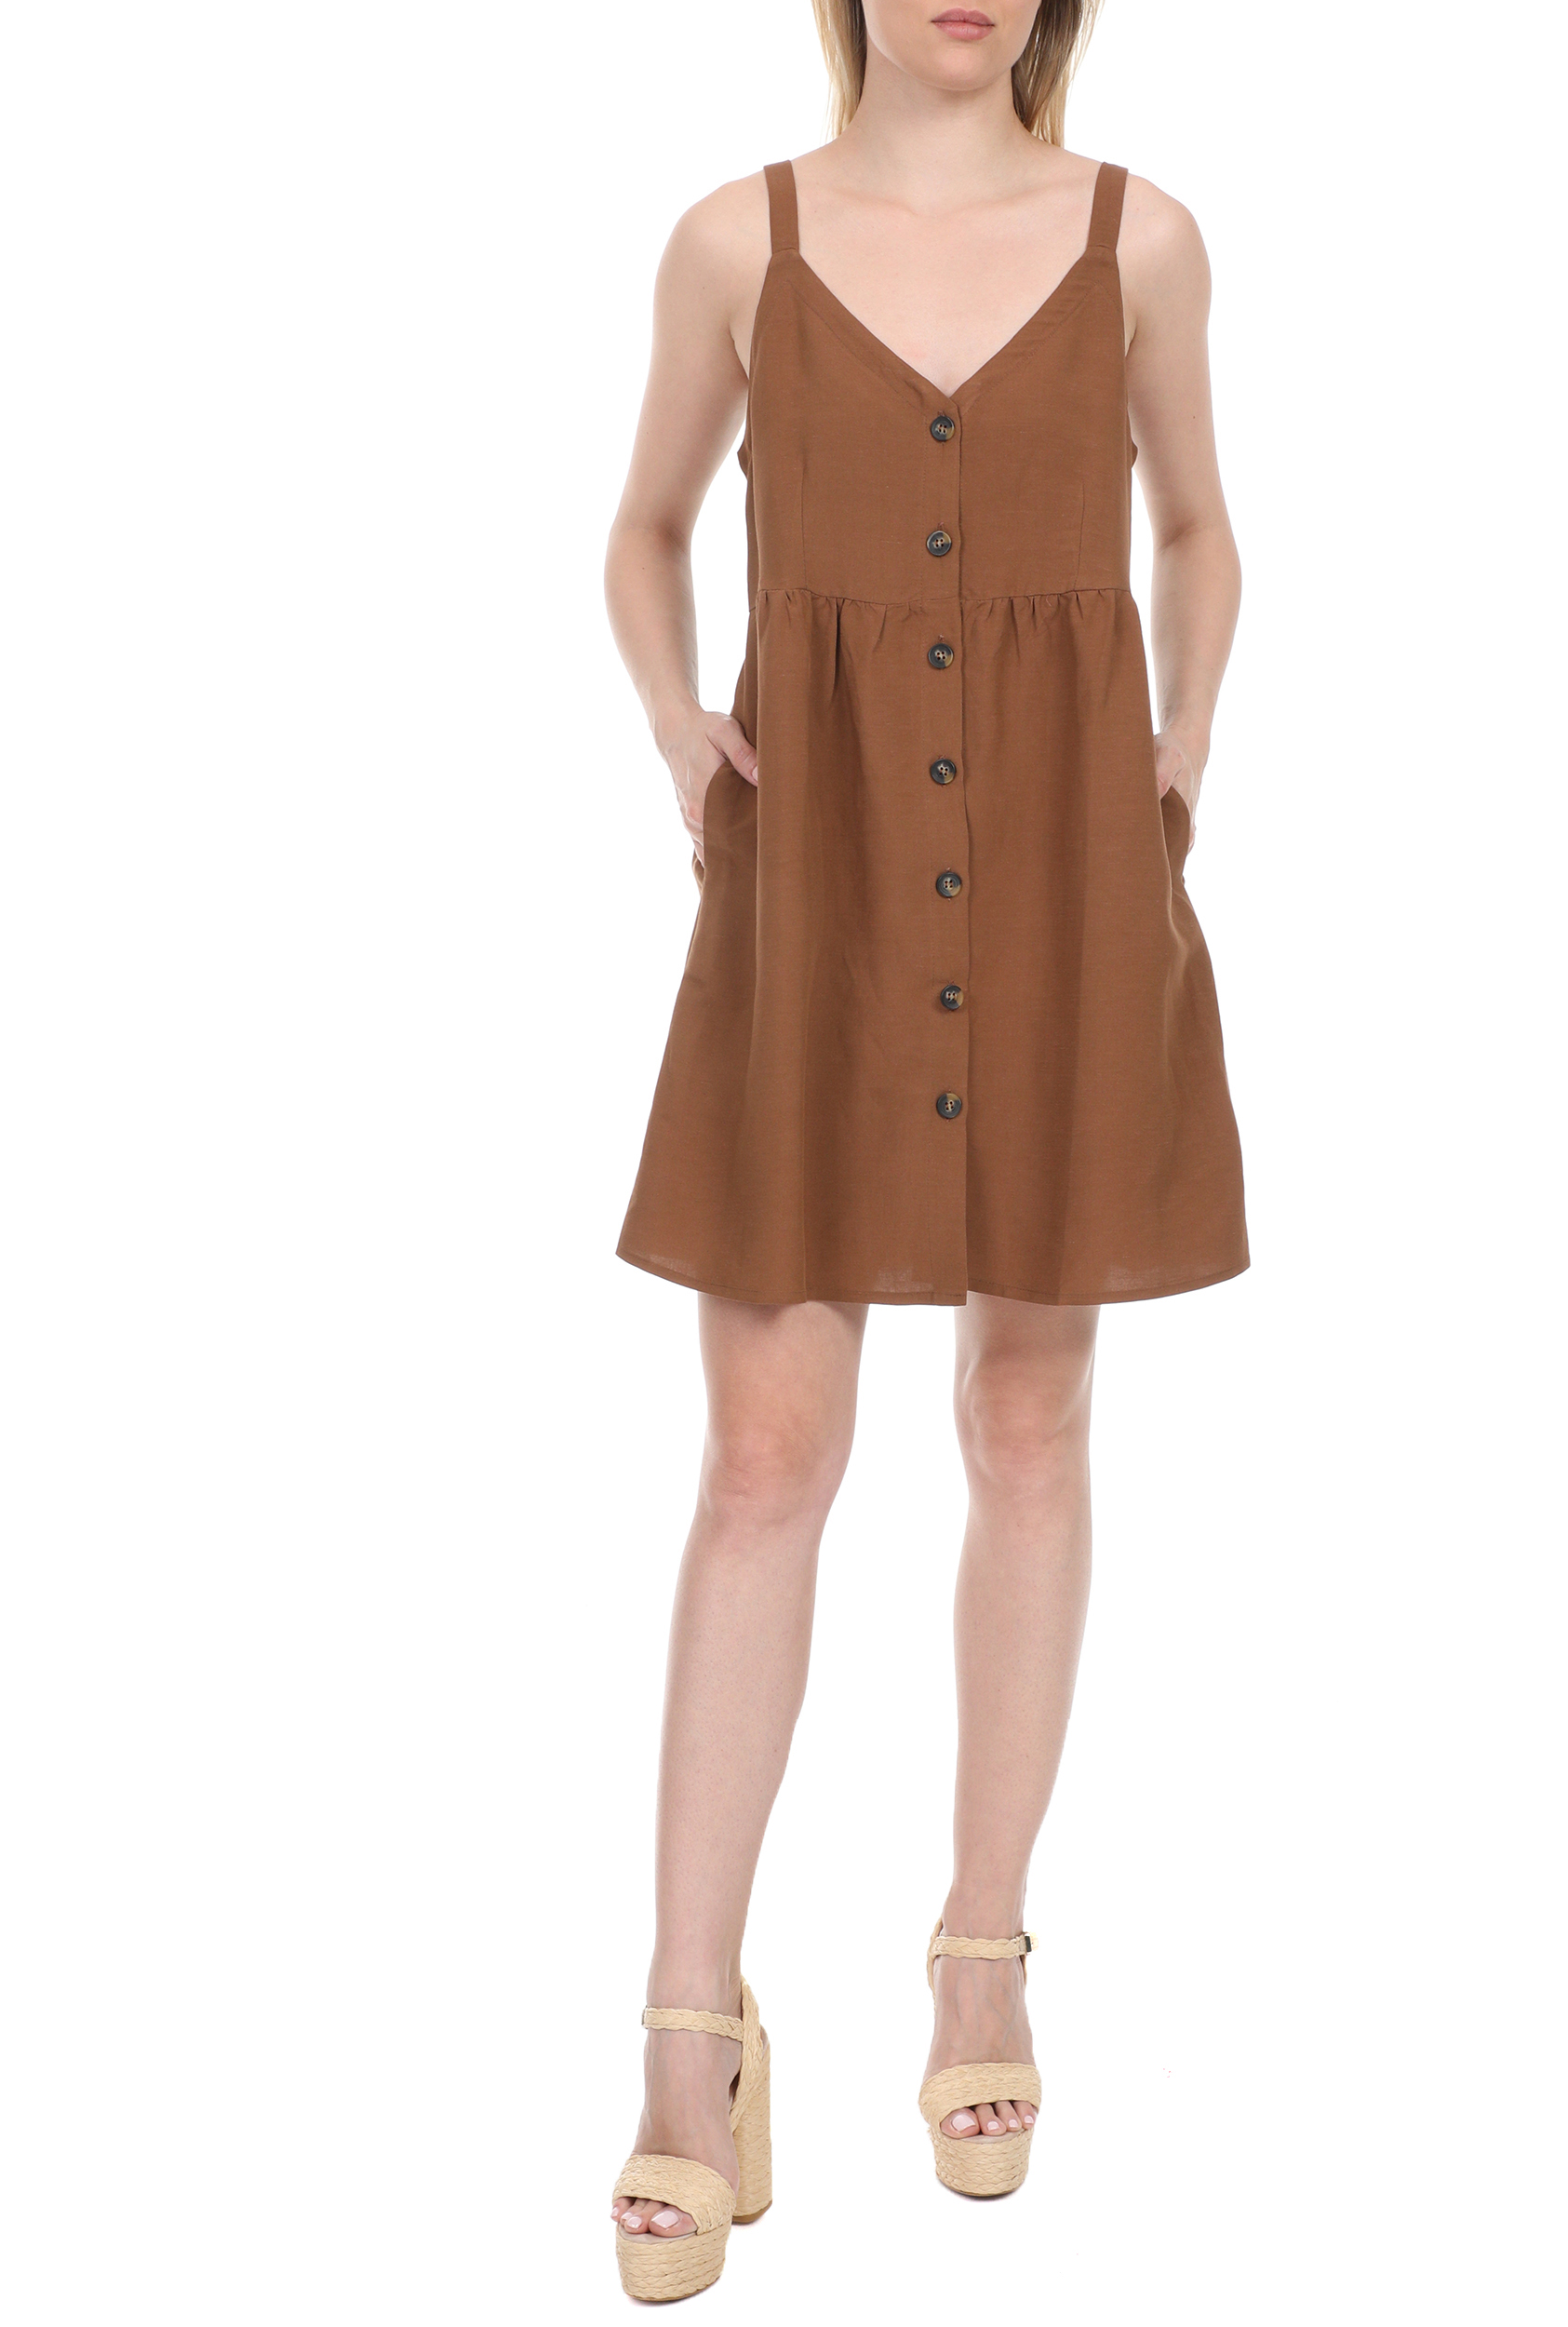 Γυναικεία/Ρούχα/Φορέματα/Μίνι LA DOLLS - Γυναικείο mini φόρεμα LA DOLLS SAFARI καφέ